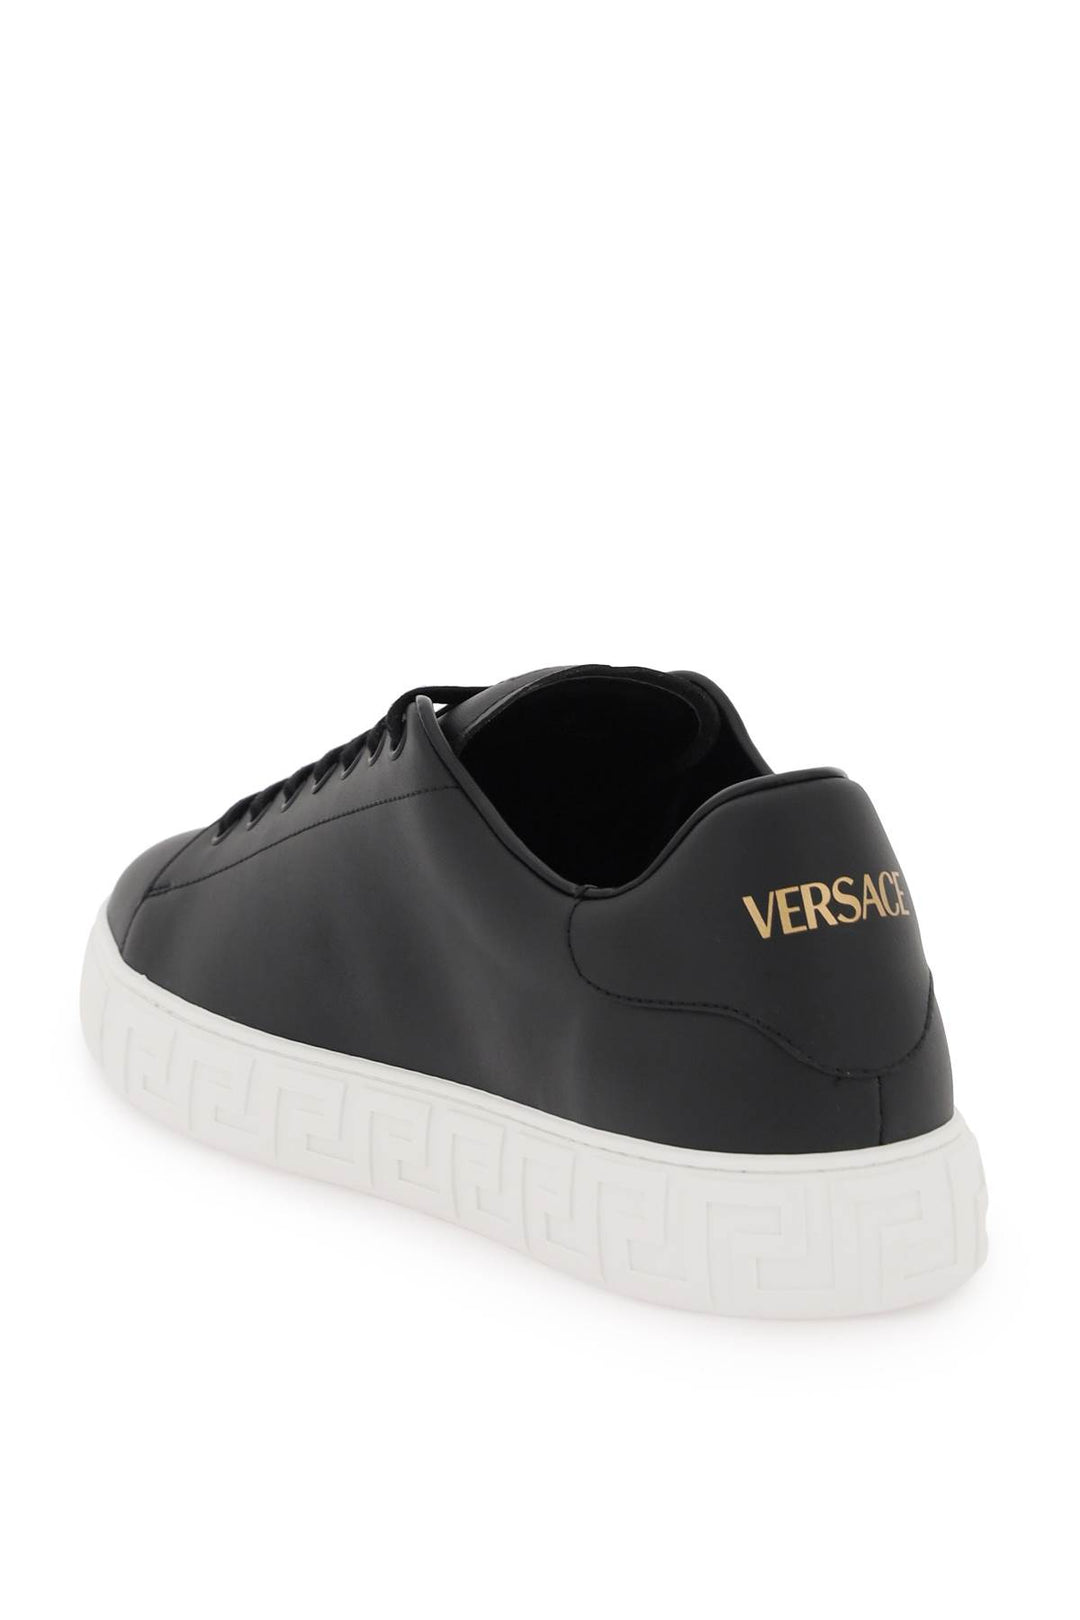 Versace Greca Sneakers   Black